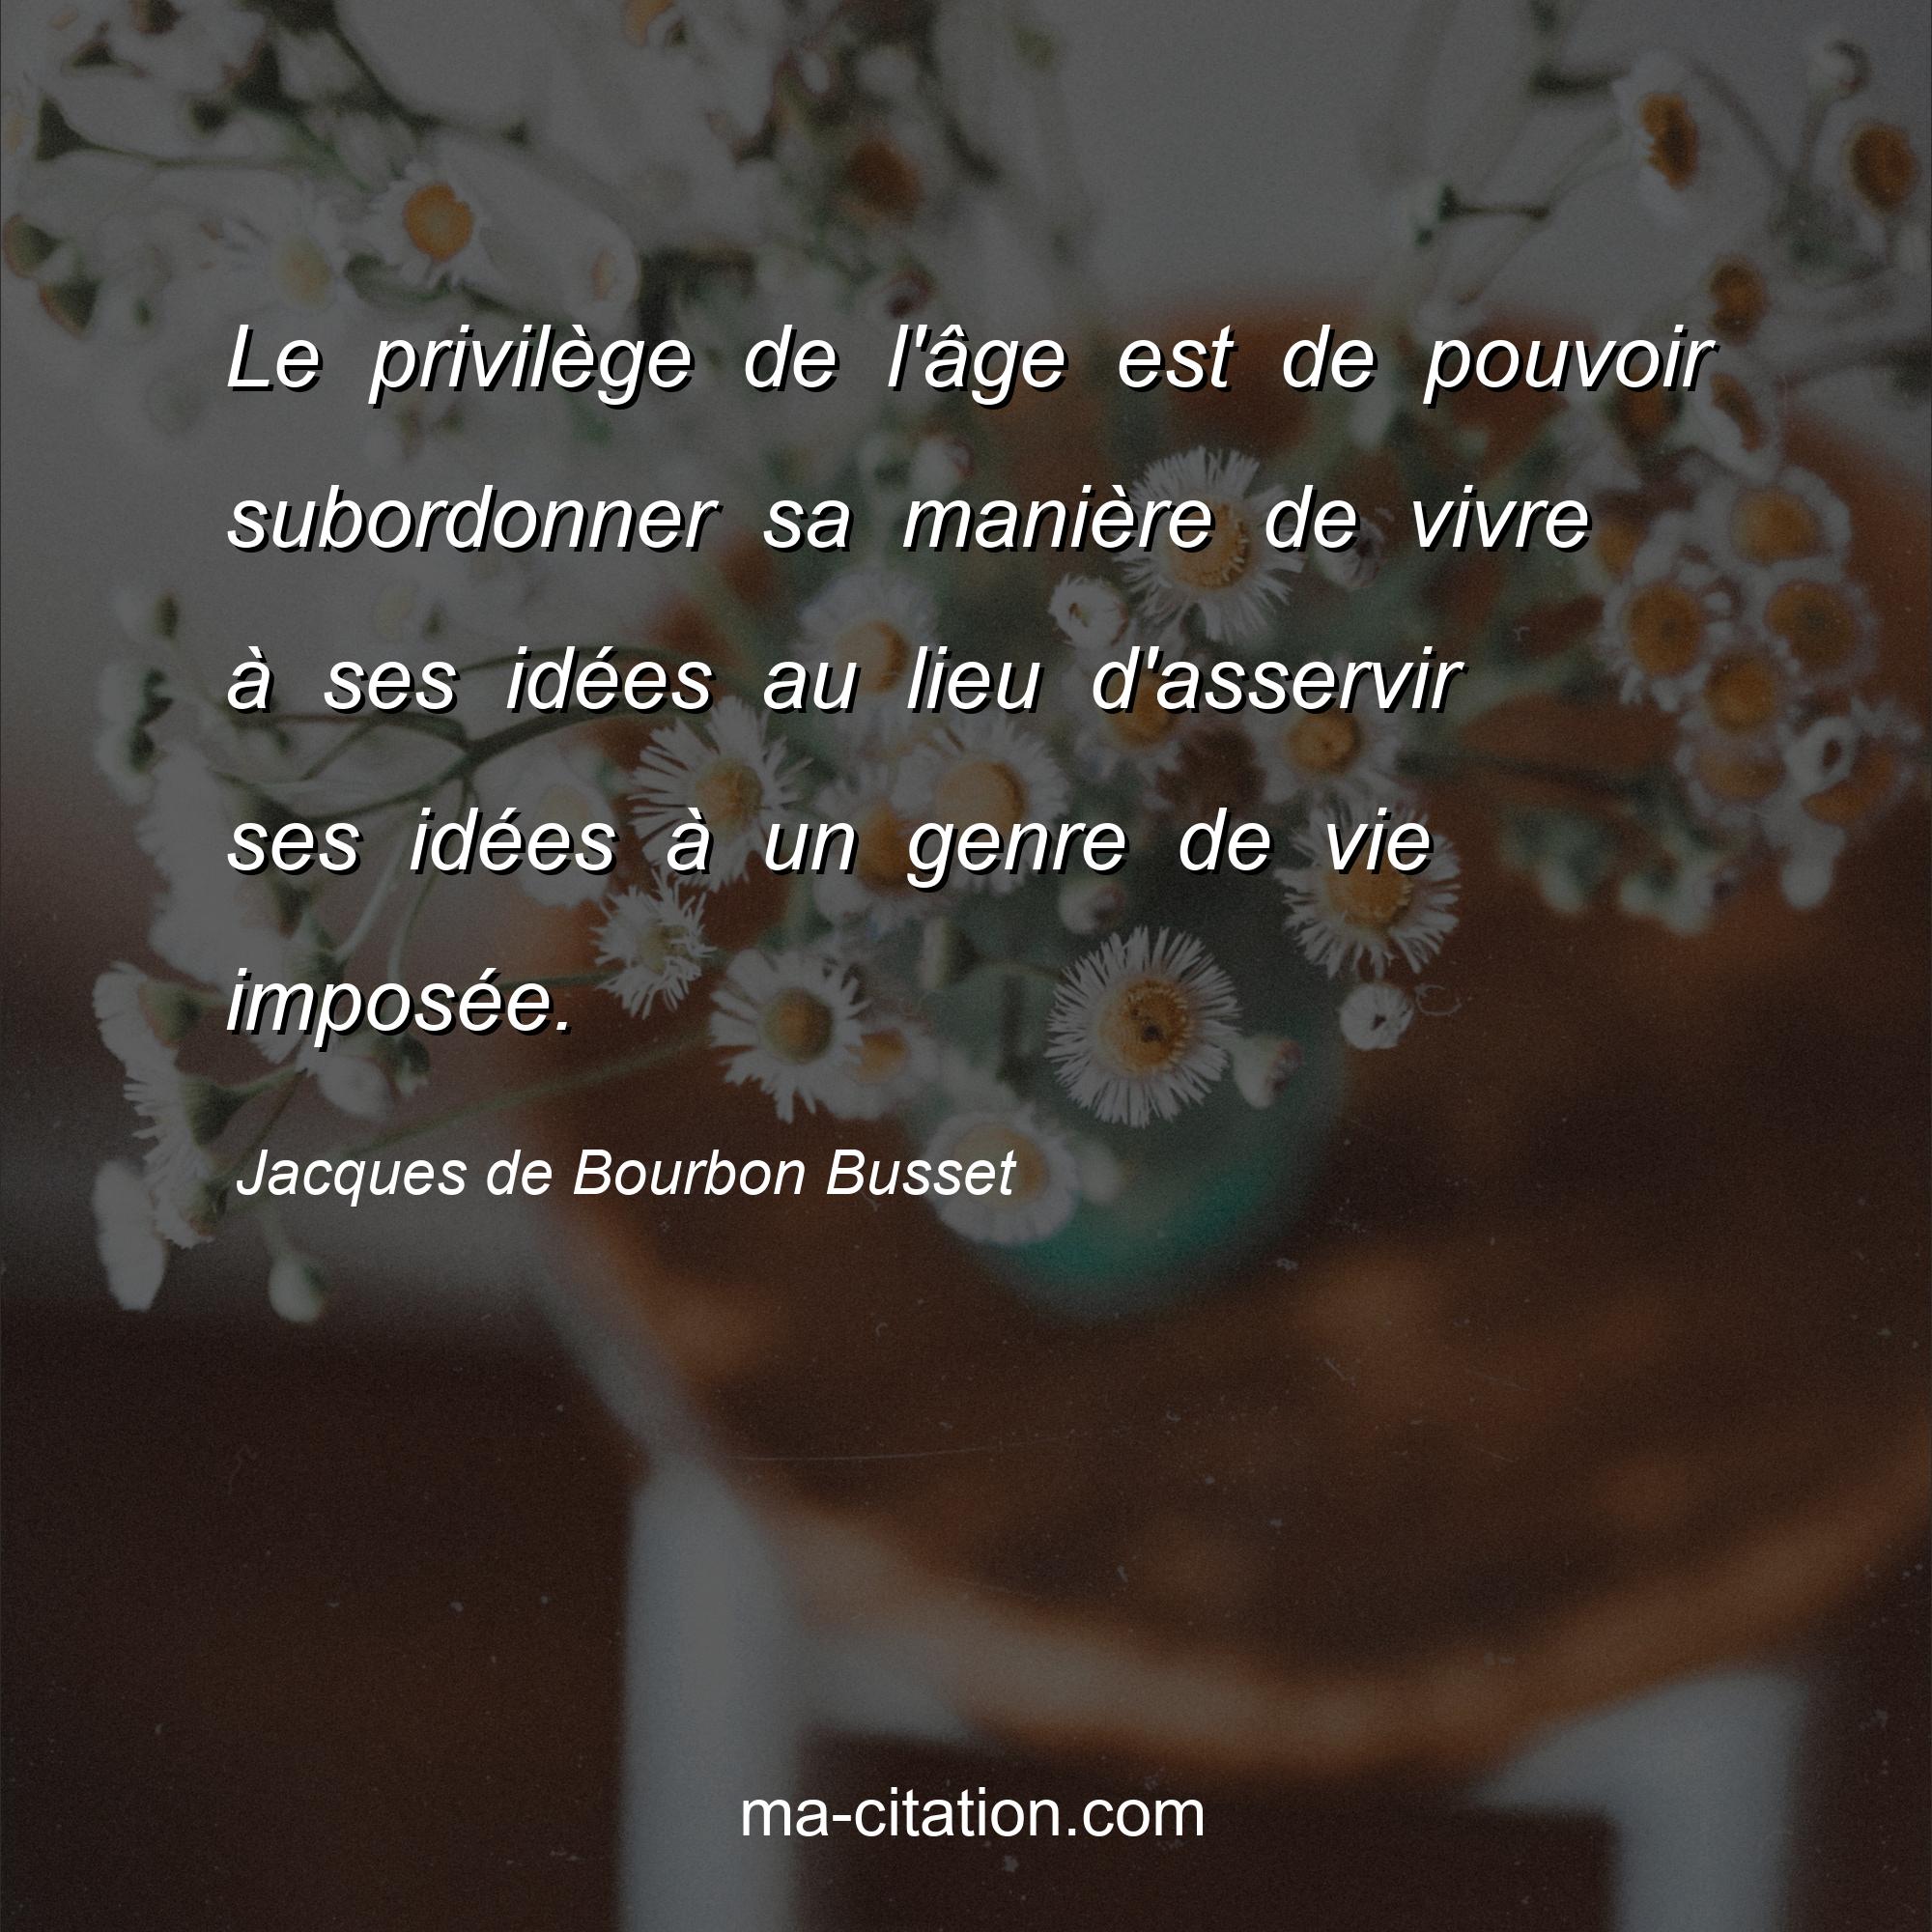 Jacques de Bourbon Busset : Le privilège de l'âge est de pouvoir subordonner sa manière de vivre à ses idées au lieu d'asservir ses idées à un genre de vie imposée.